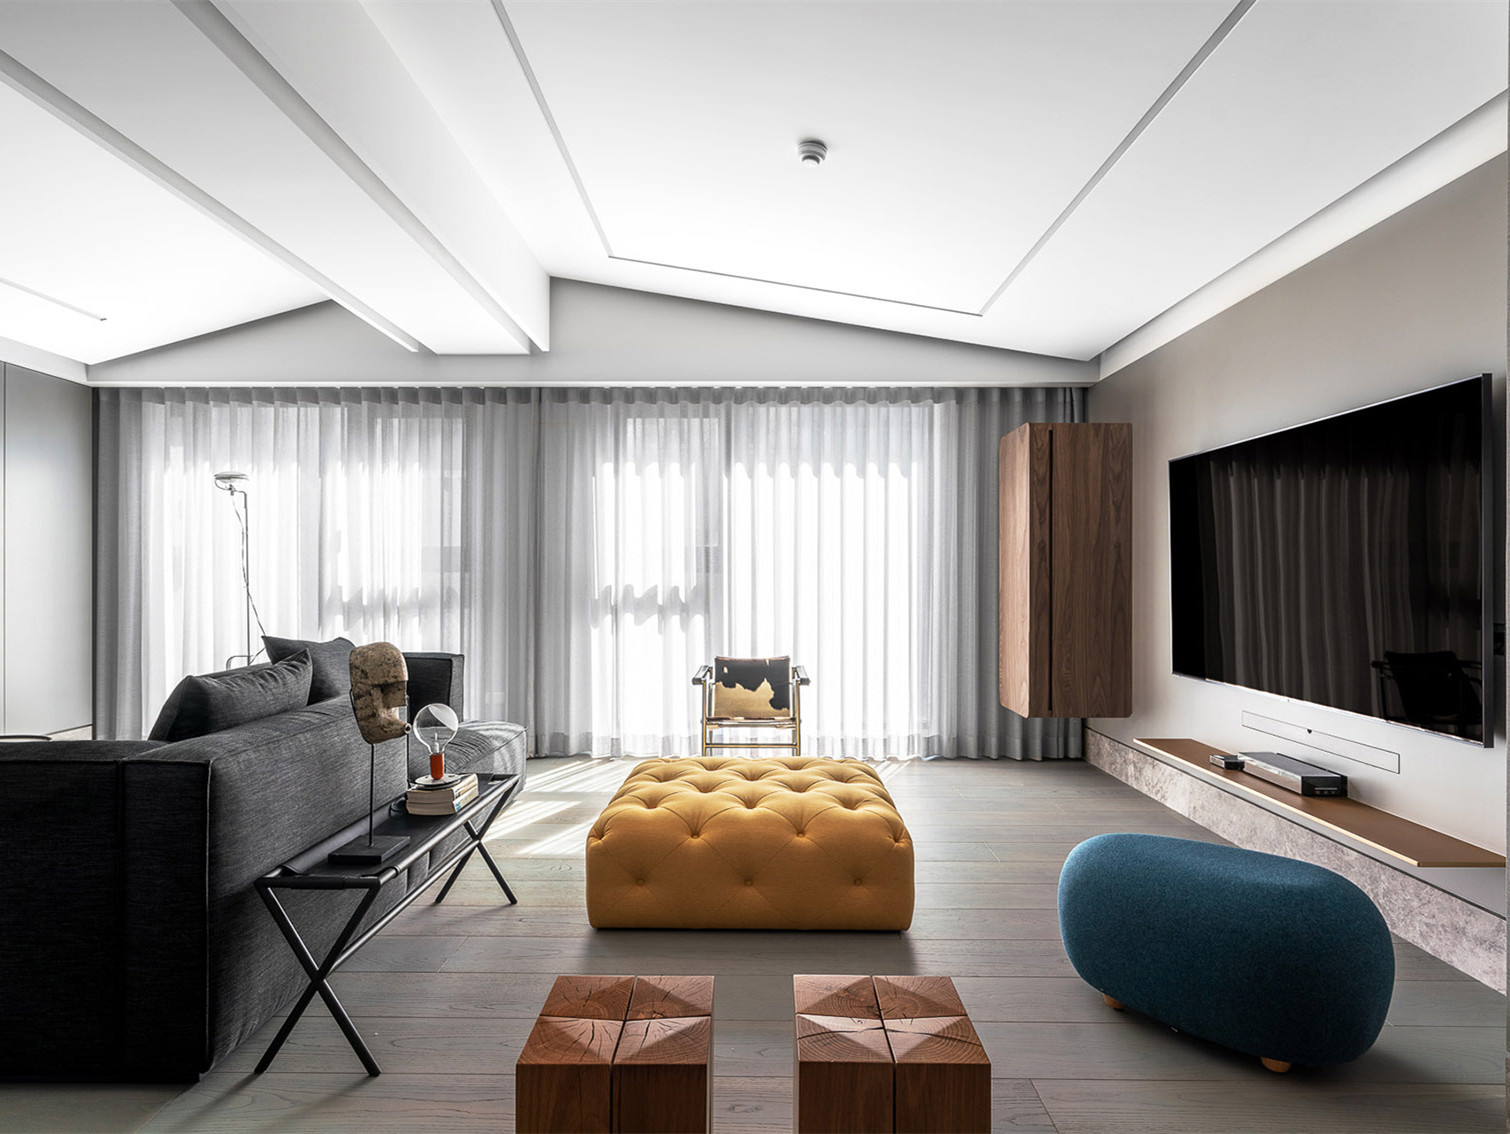 台北嬉皮绅士公寓——玮奕国际设计